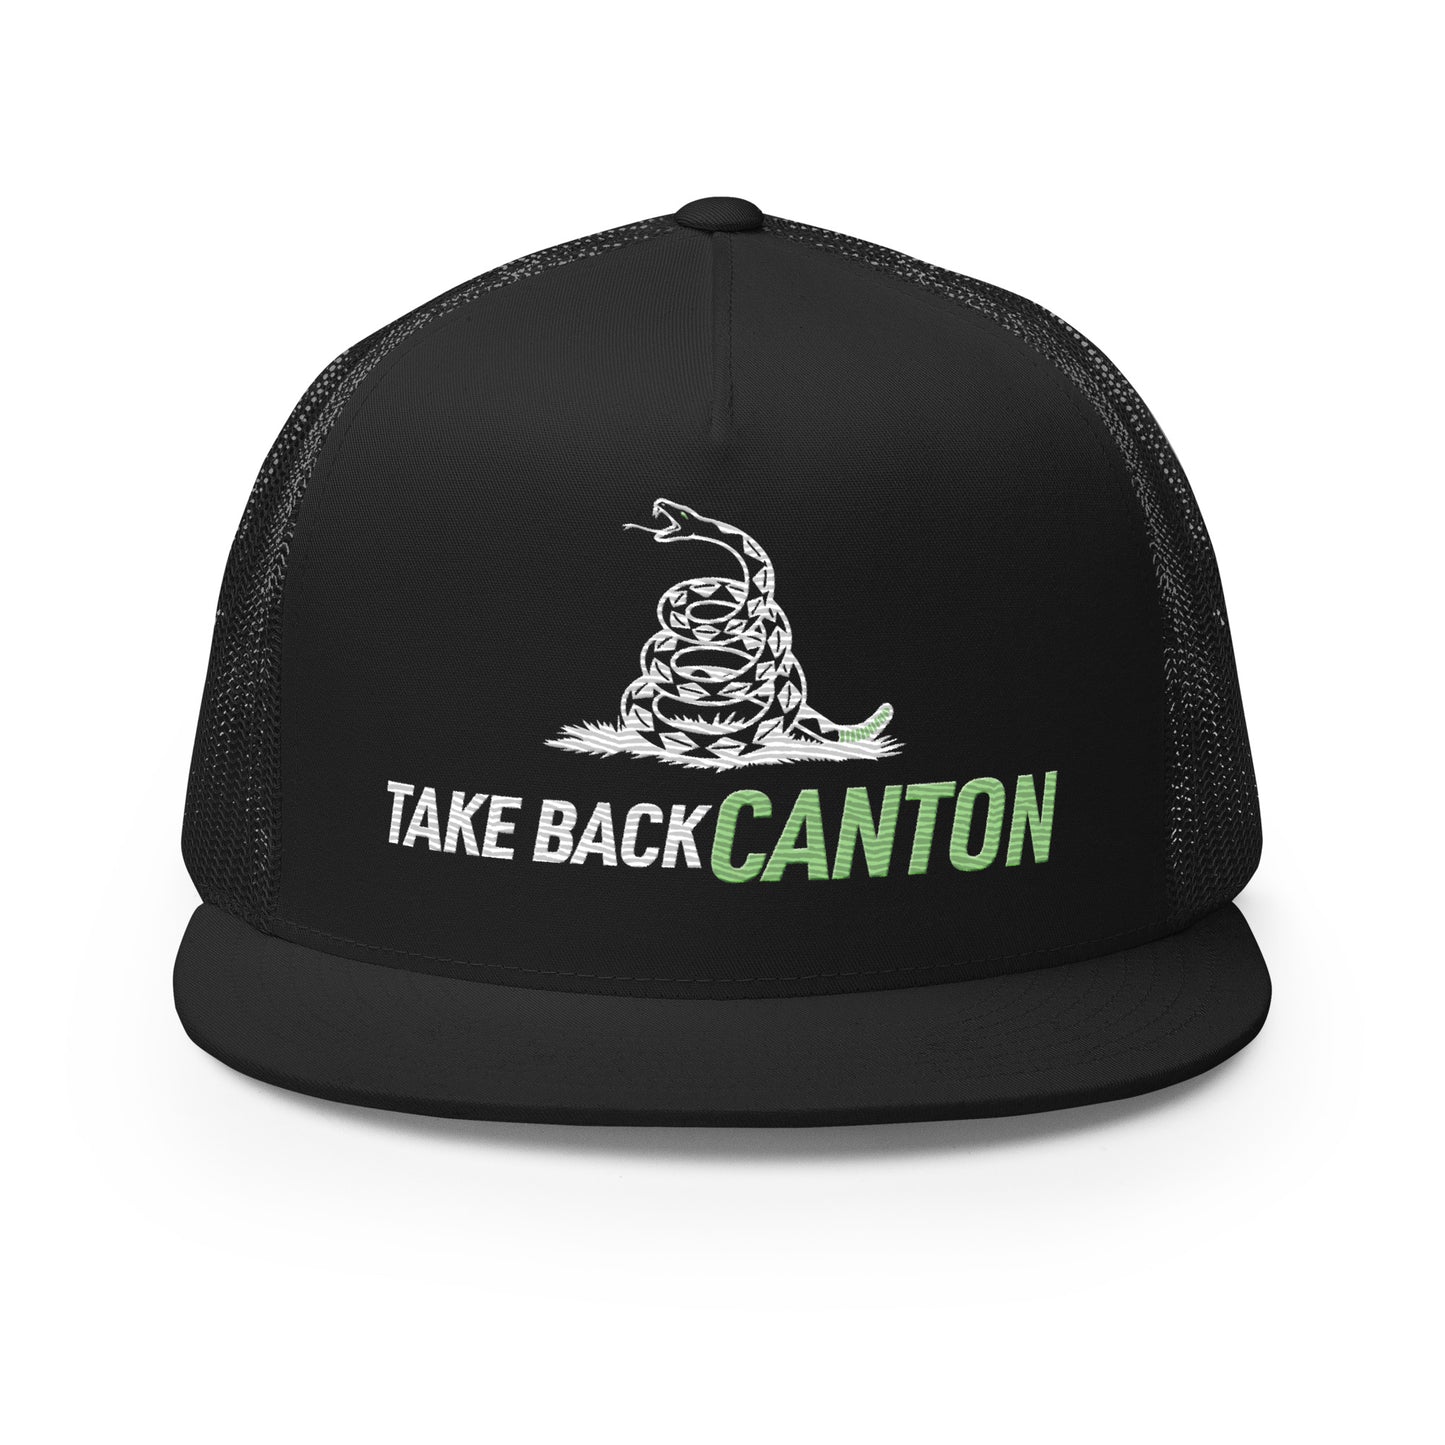 Microdots “Take Back Canton” Design - Trucker Cap